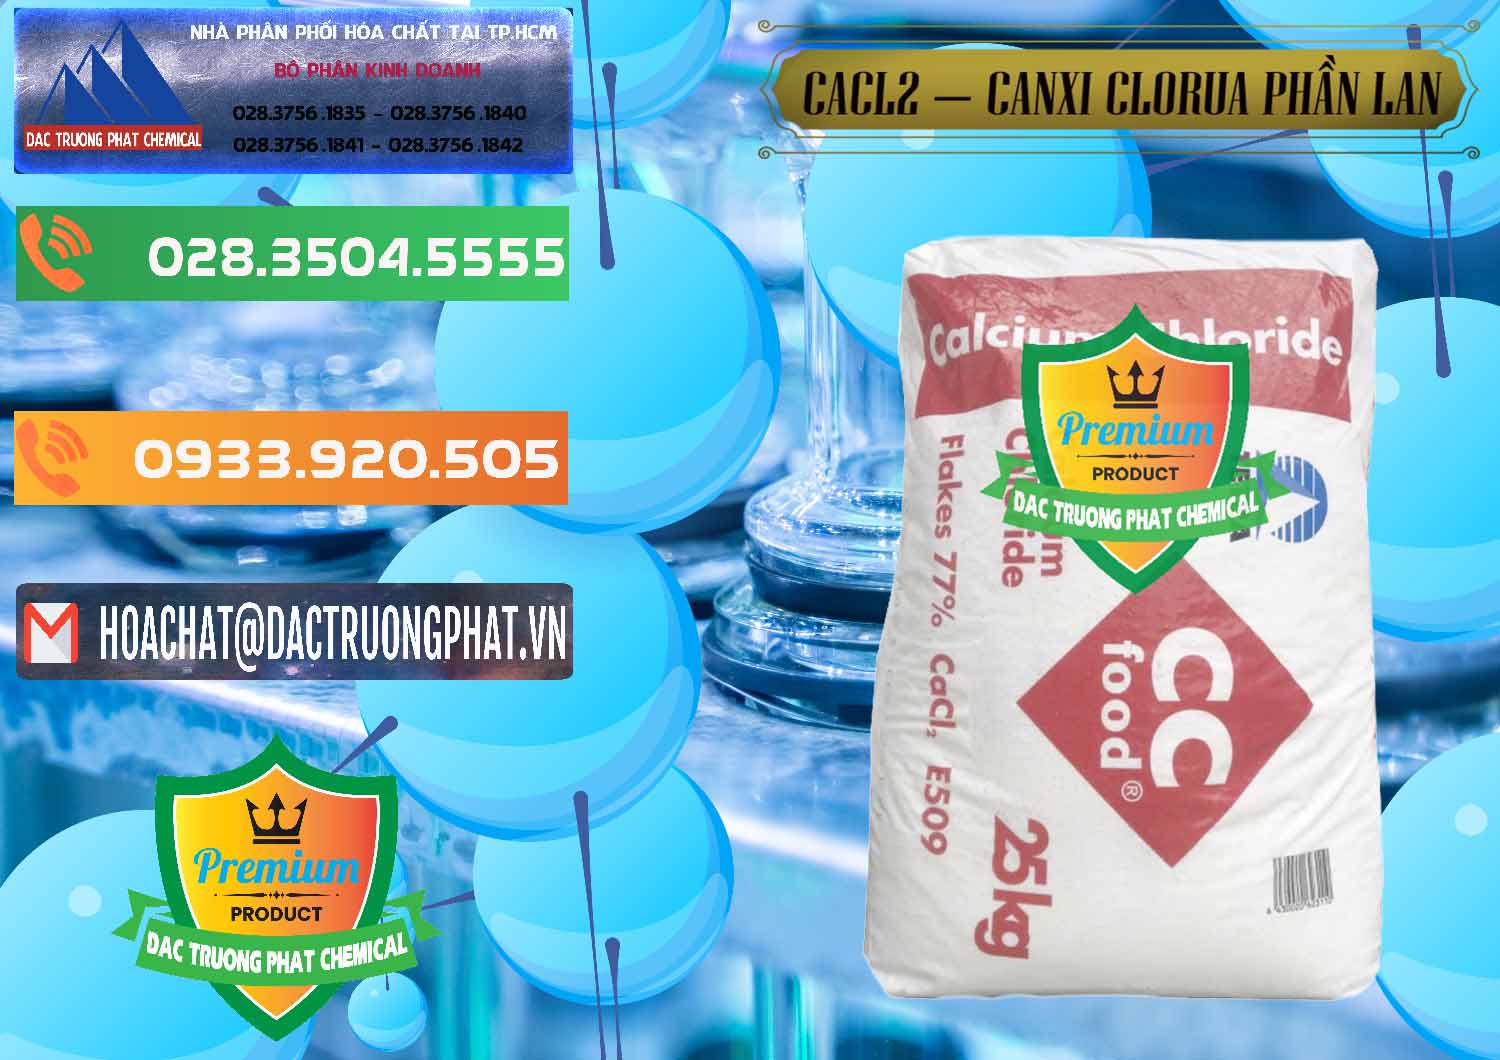 Kinh doanh & bán CaCl2 – Canxi Clorua Dạng Vảy 77% Tetra Phần Lan Finland - 0353 - Nơi chuyên bán ( cung cấp ) hóa chất tại TP.HCM - hoachatxulynuoc.com.vn